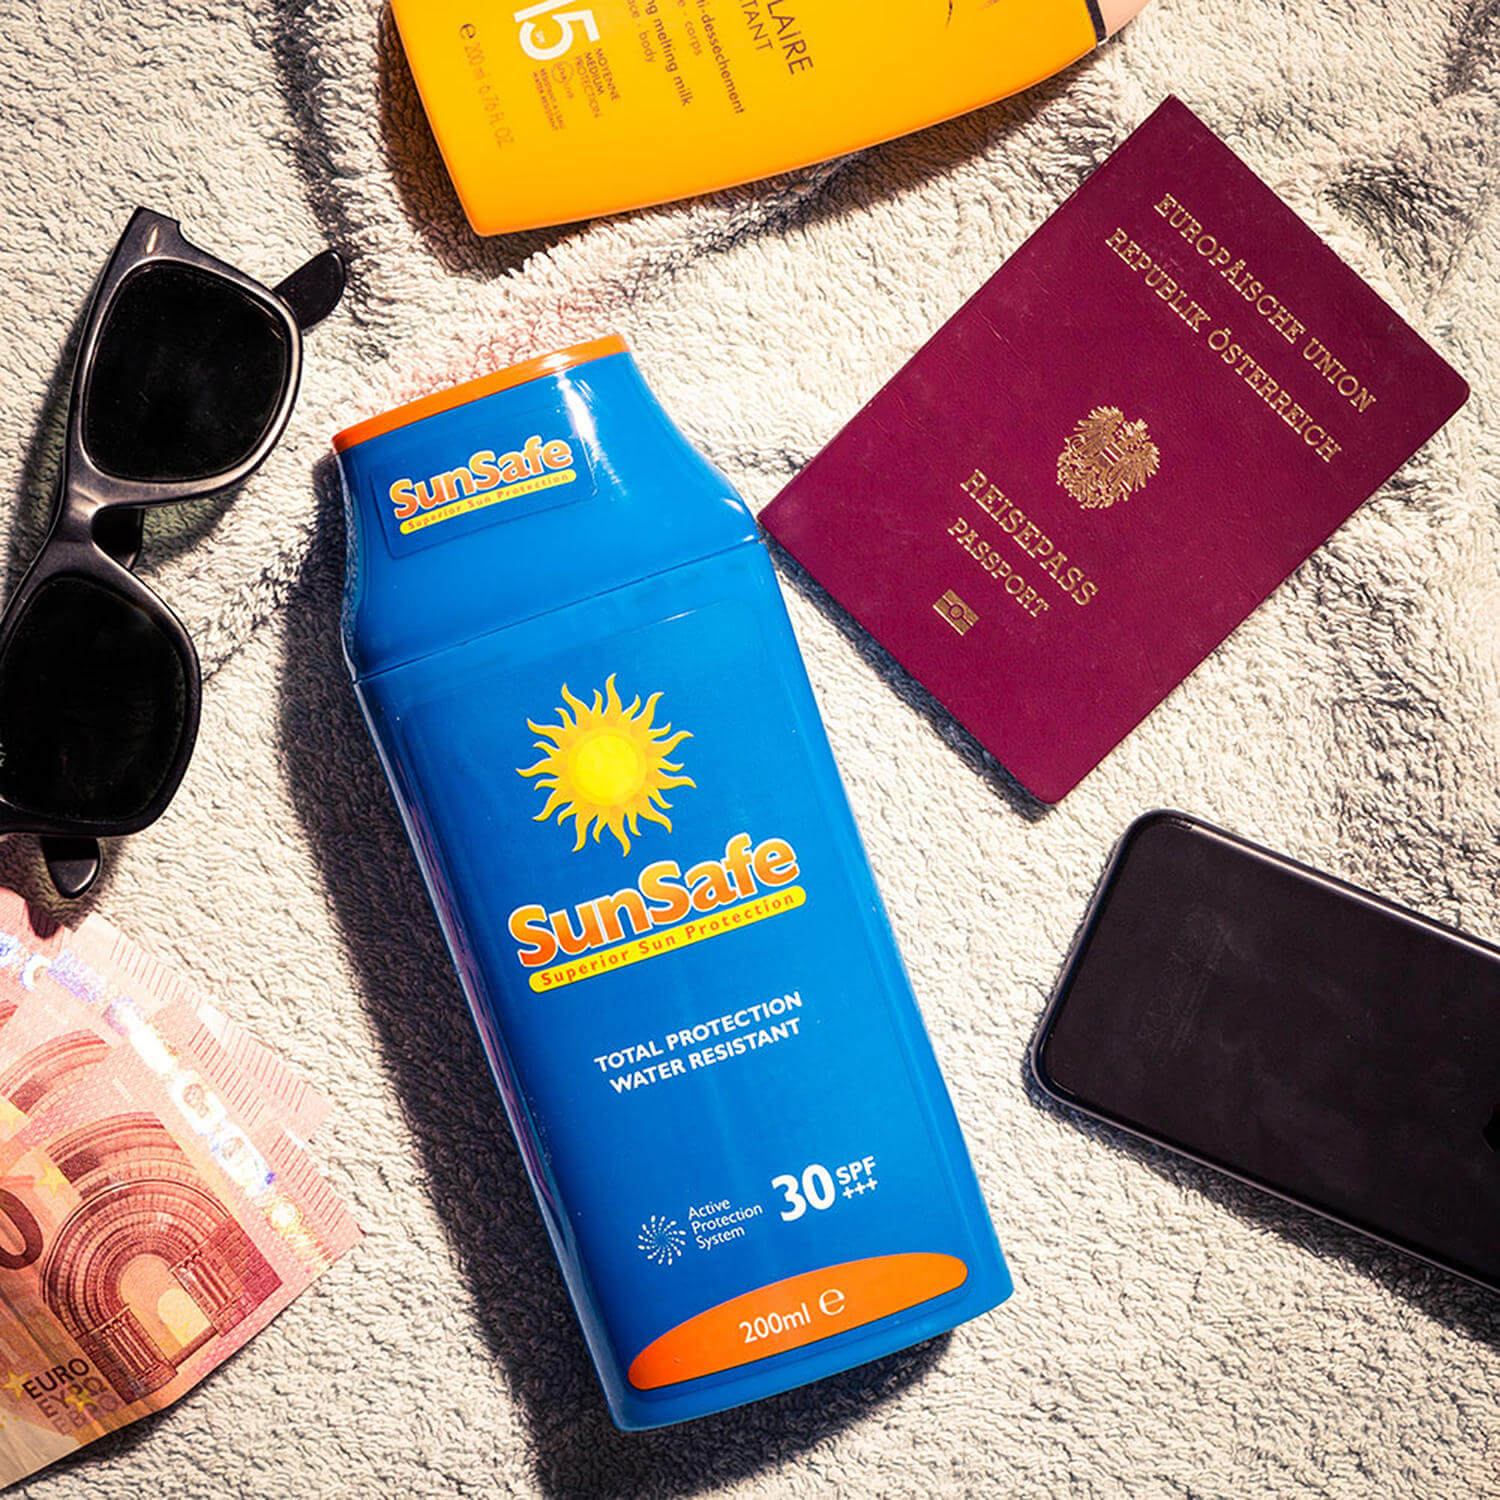 Auf dem Handtuch liegen Sonnencreme, ein Reisepass, eine Sonnenbrille, 10€-Scheine und ein Handy.